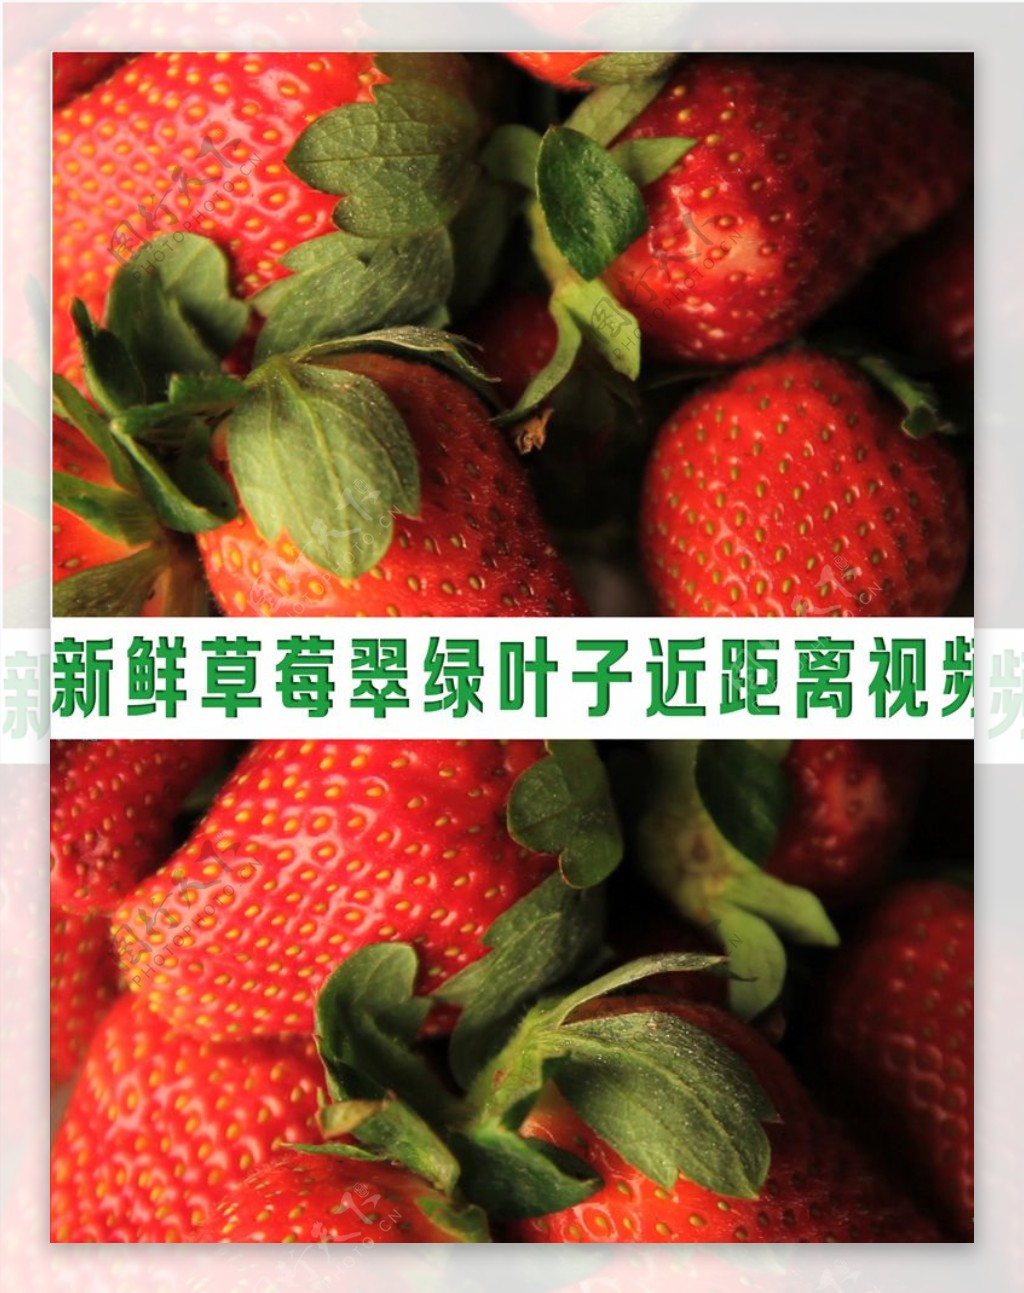 新鲜饱满草莓翠绿叶子水果视频